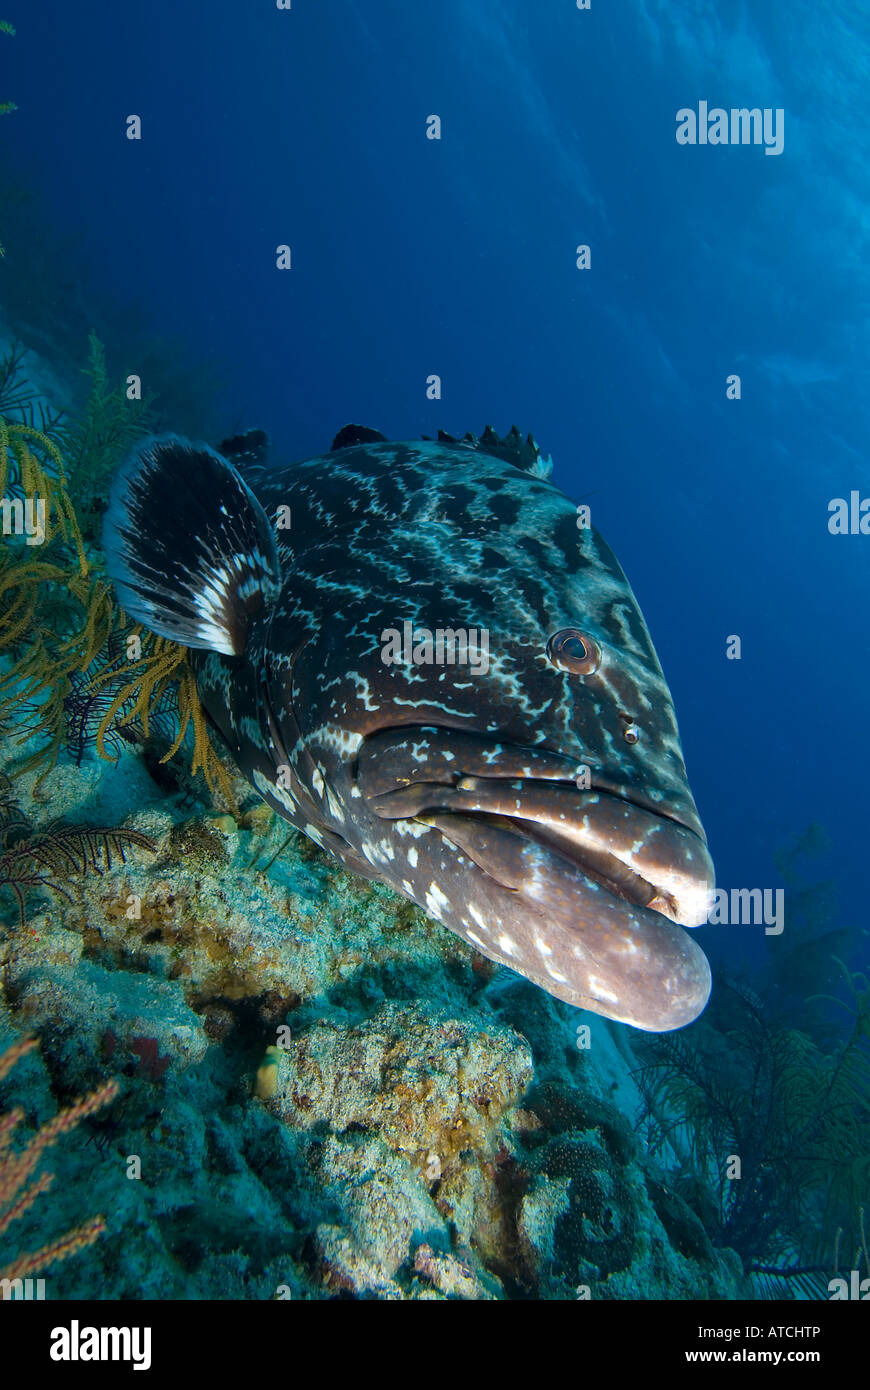 Le groupeur Bahamas, sous l'eau, la vie marine, l'océan, sur la mer, plongée, plongée sous-marine, sea life, du poisson, de l'eau bleue Banque D'Images